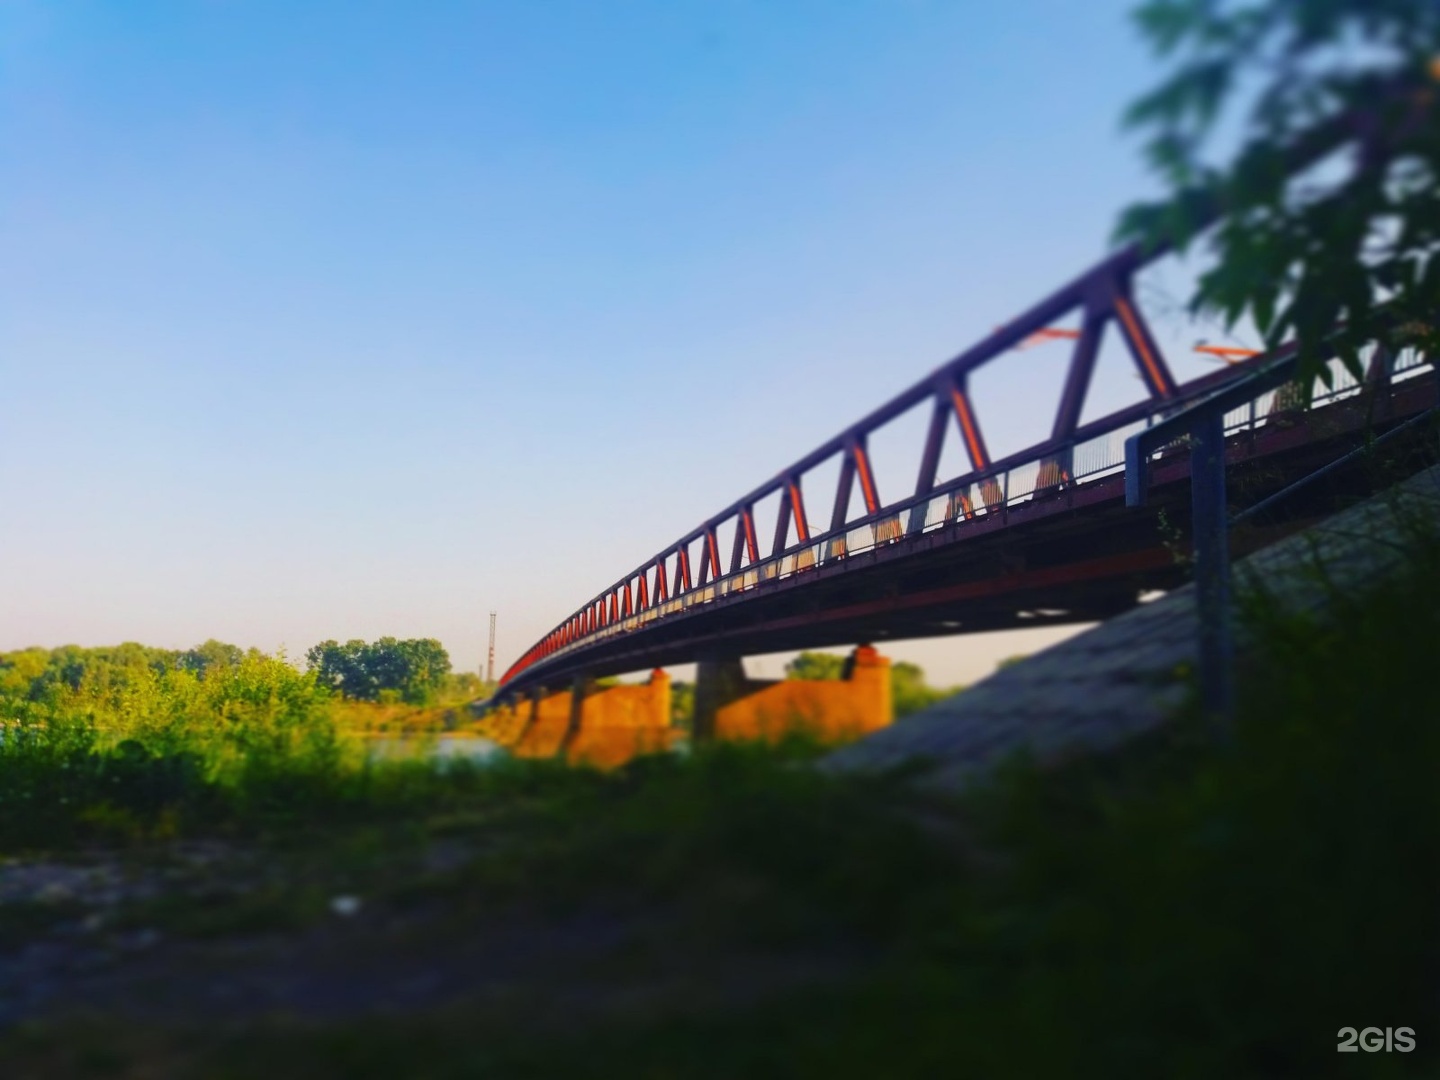 Мосты в новокузнецке